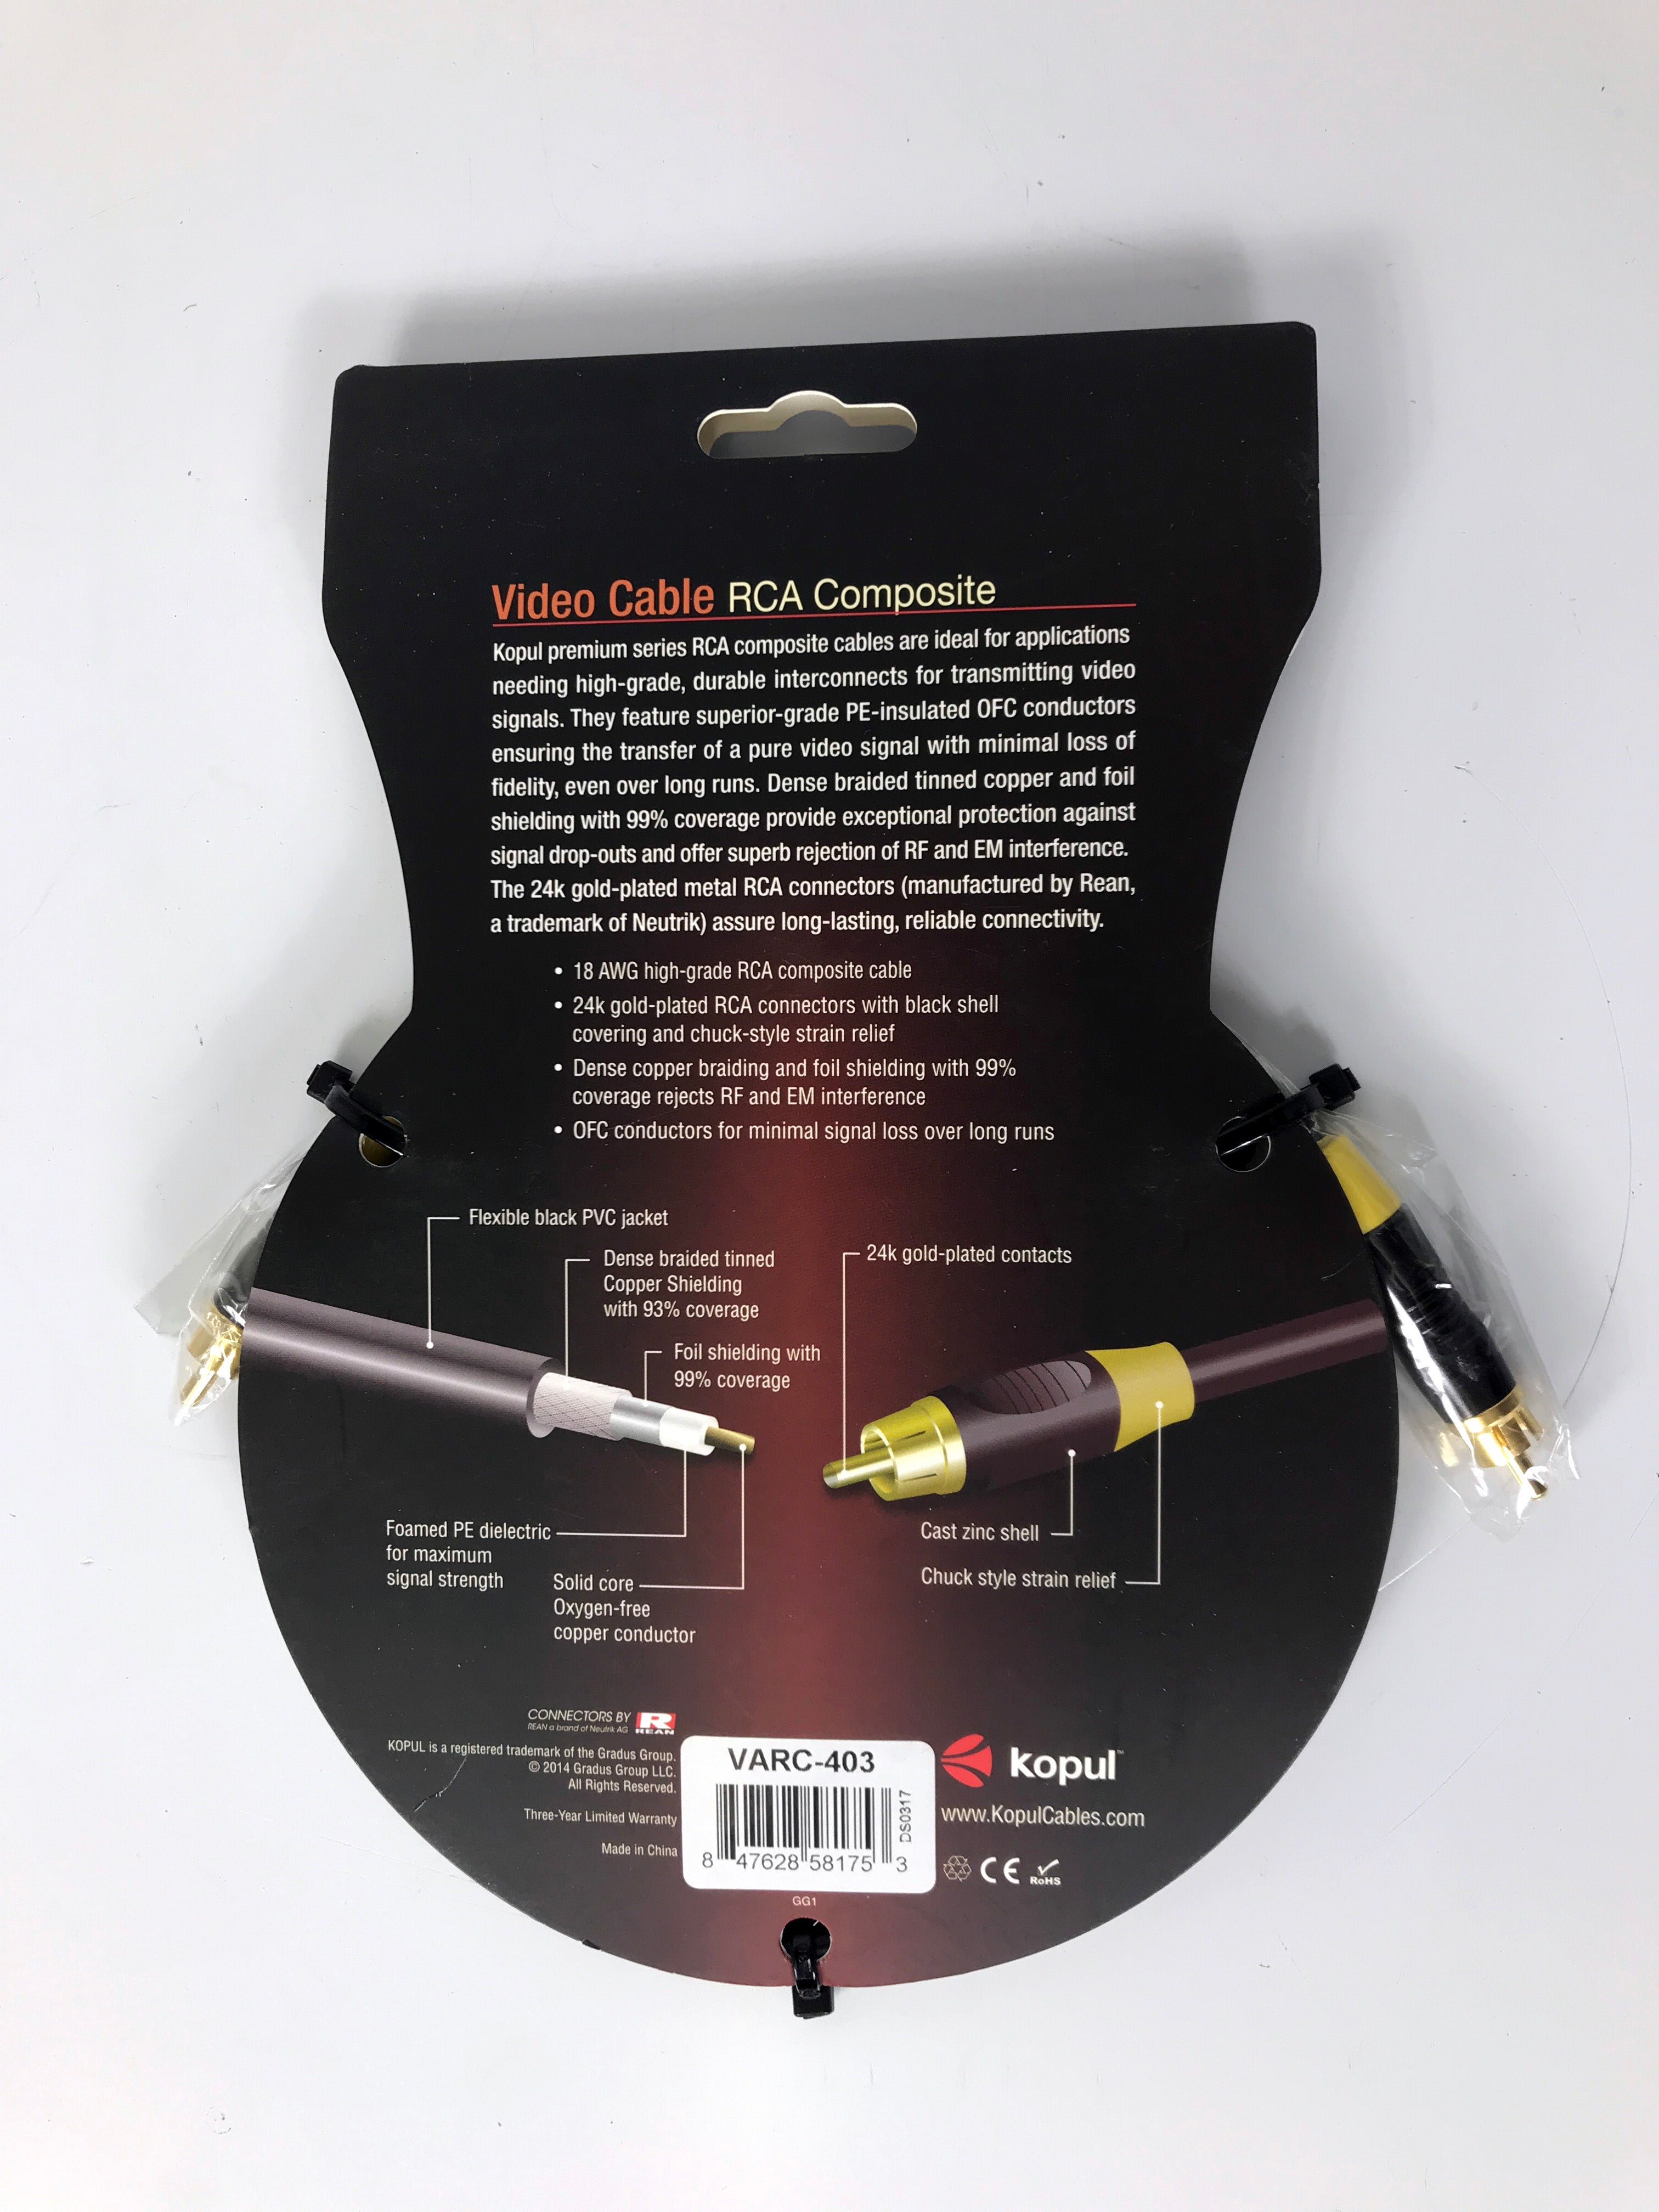 Kopul Premium Series RCA Composite Video Cable (3') *New*